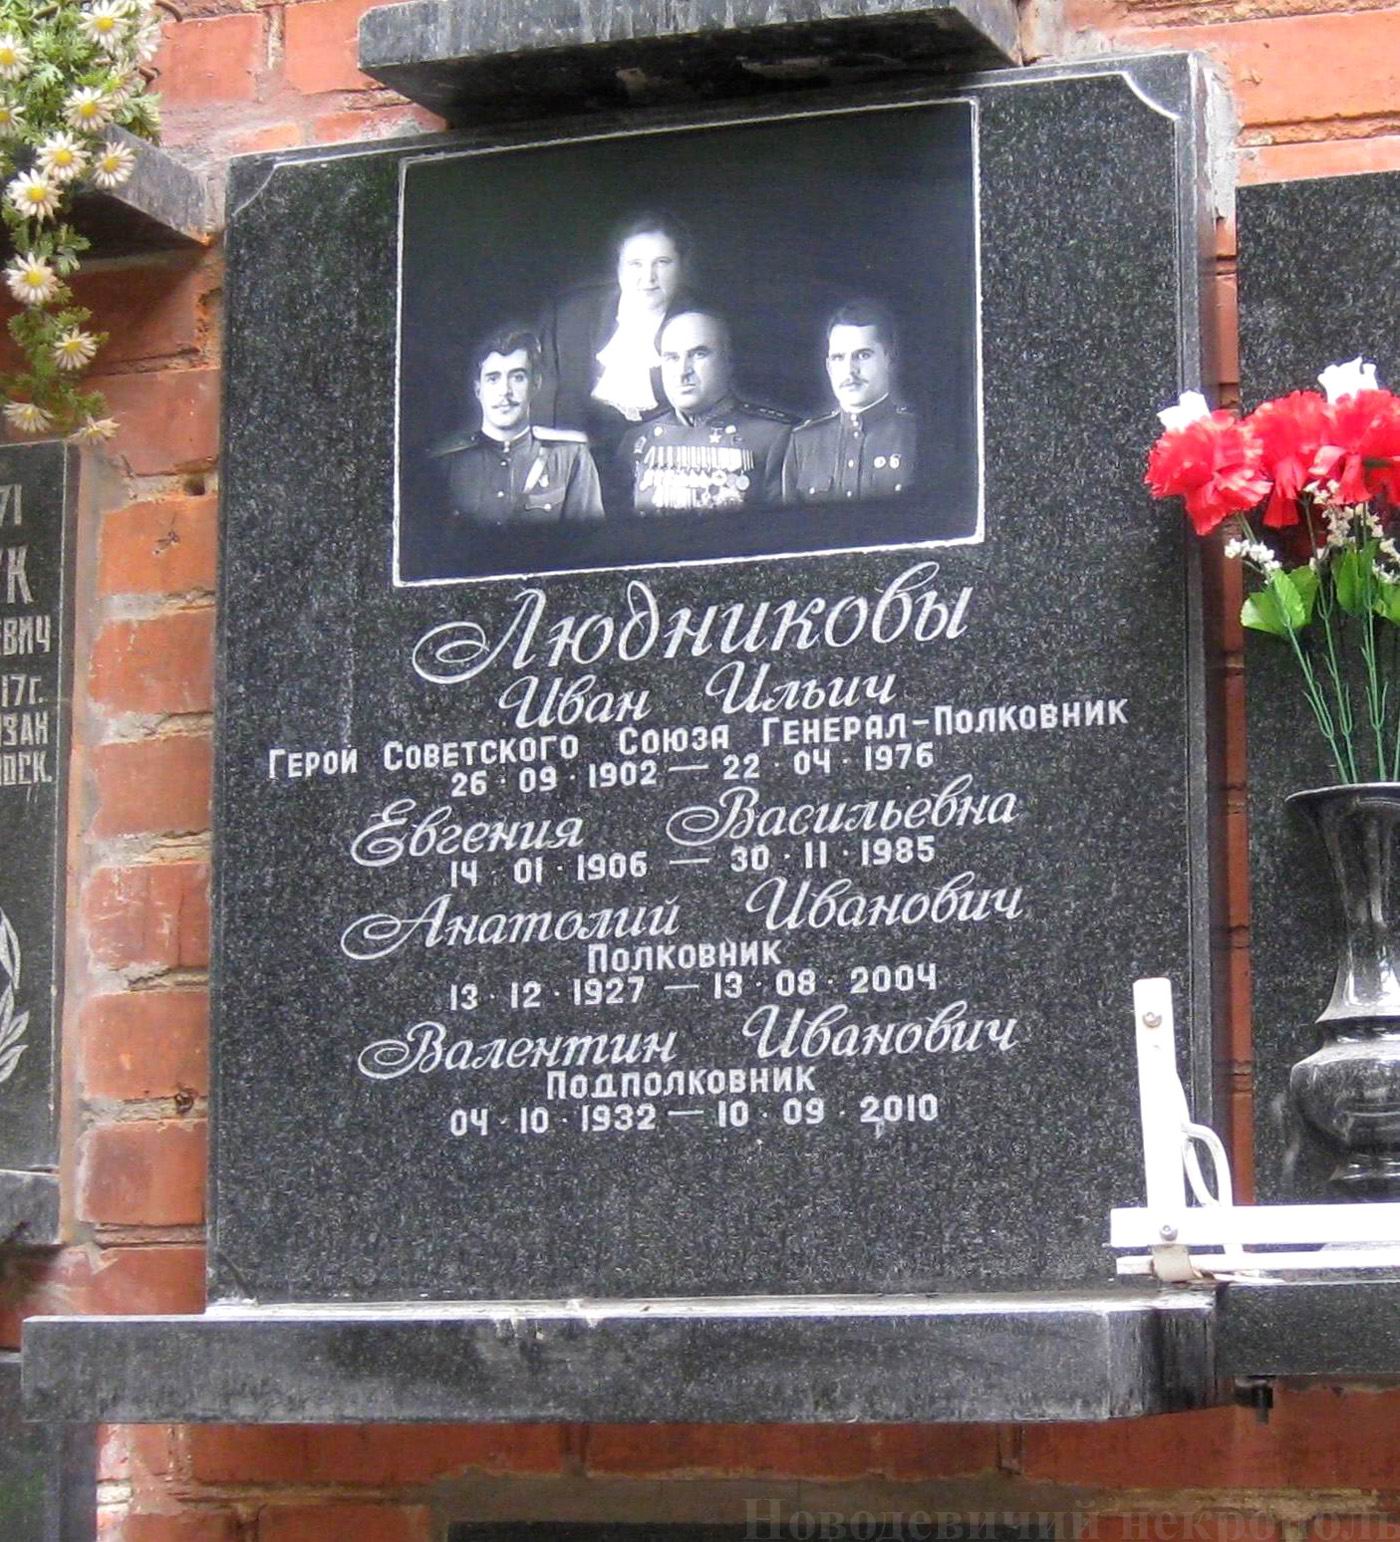 Плита на нише Людникова И.И. (1902–1976), на Новодевичьем кладбище (колумбарий [134]–31–2). Нажмите левую кнопку мыши, чтобы увидеть вариант до 2010.